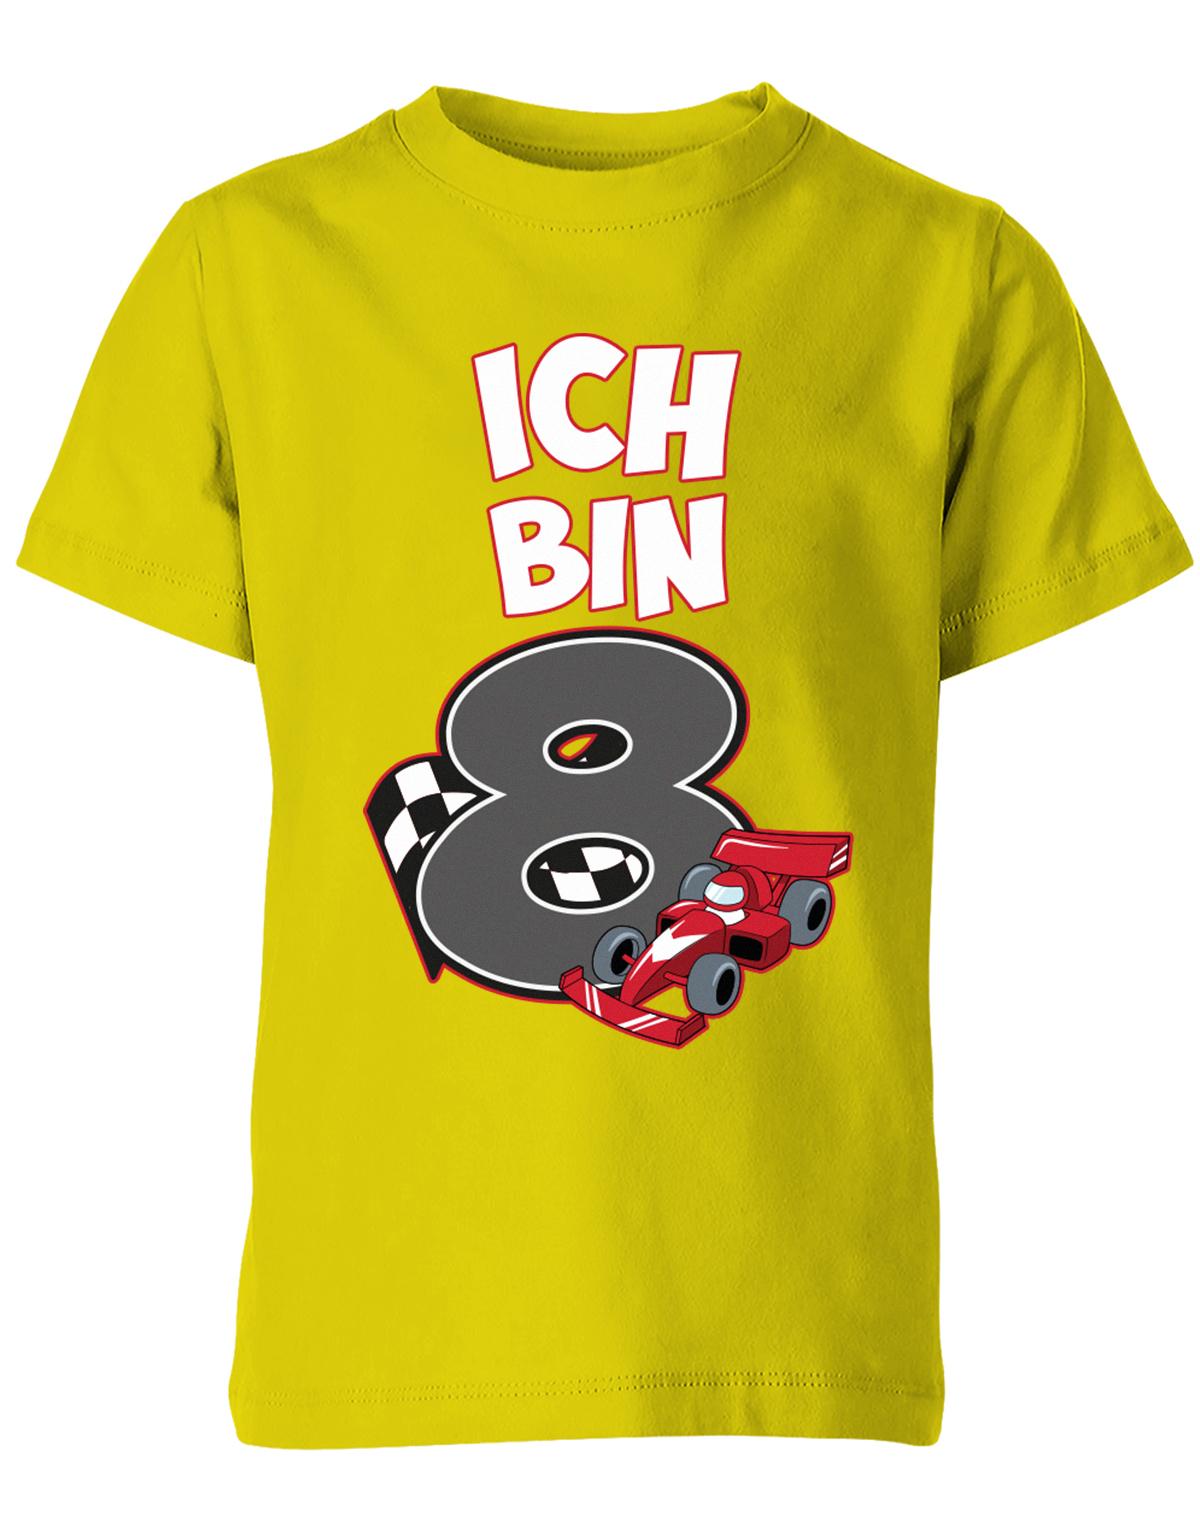 ich-bin-8-autorennen-rennwagen-geburtstag-rennfahrer-kinder-shirt-gelb